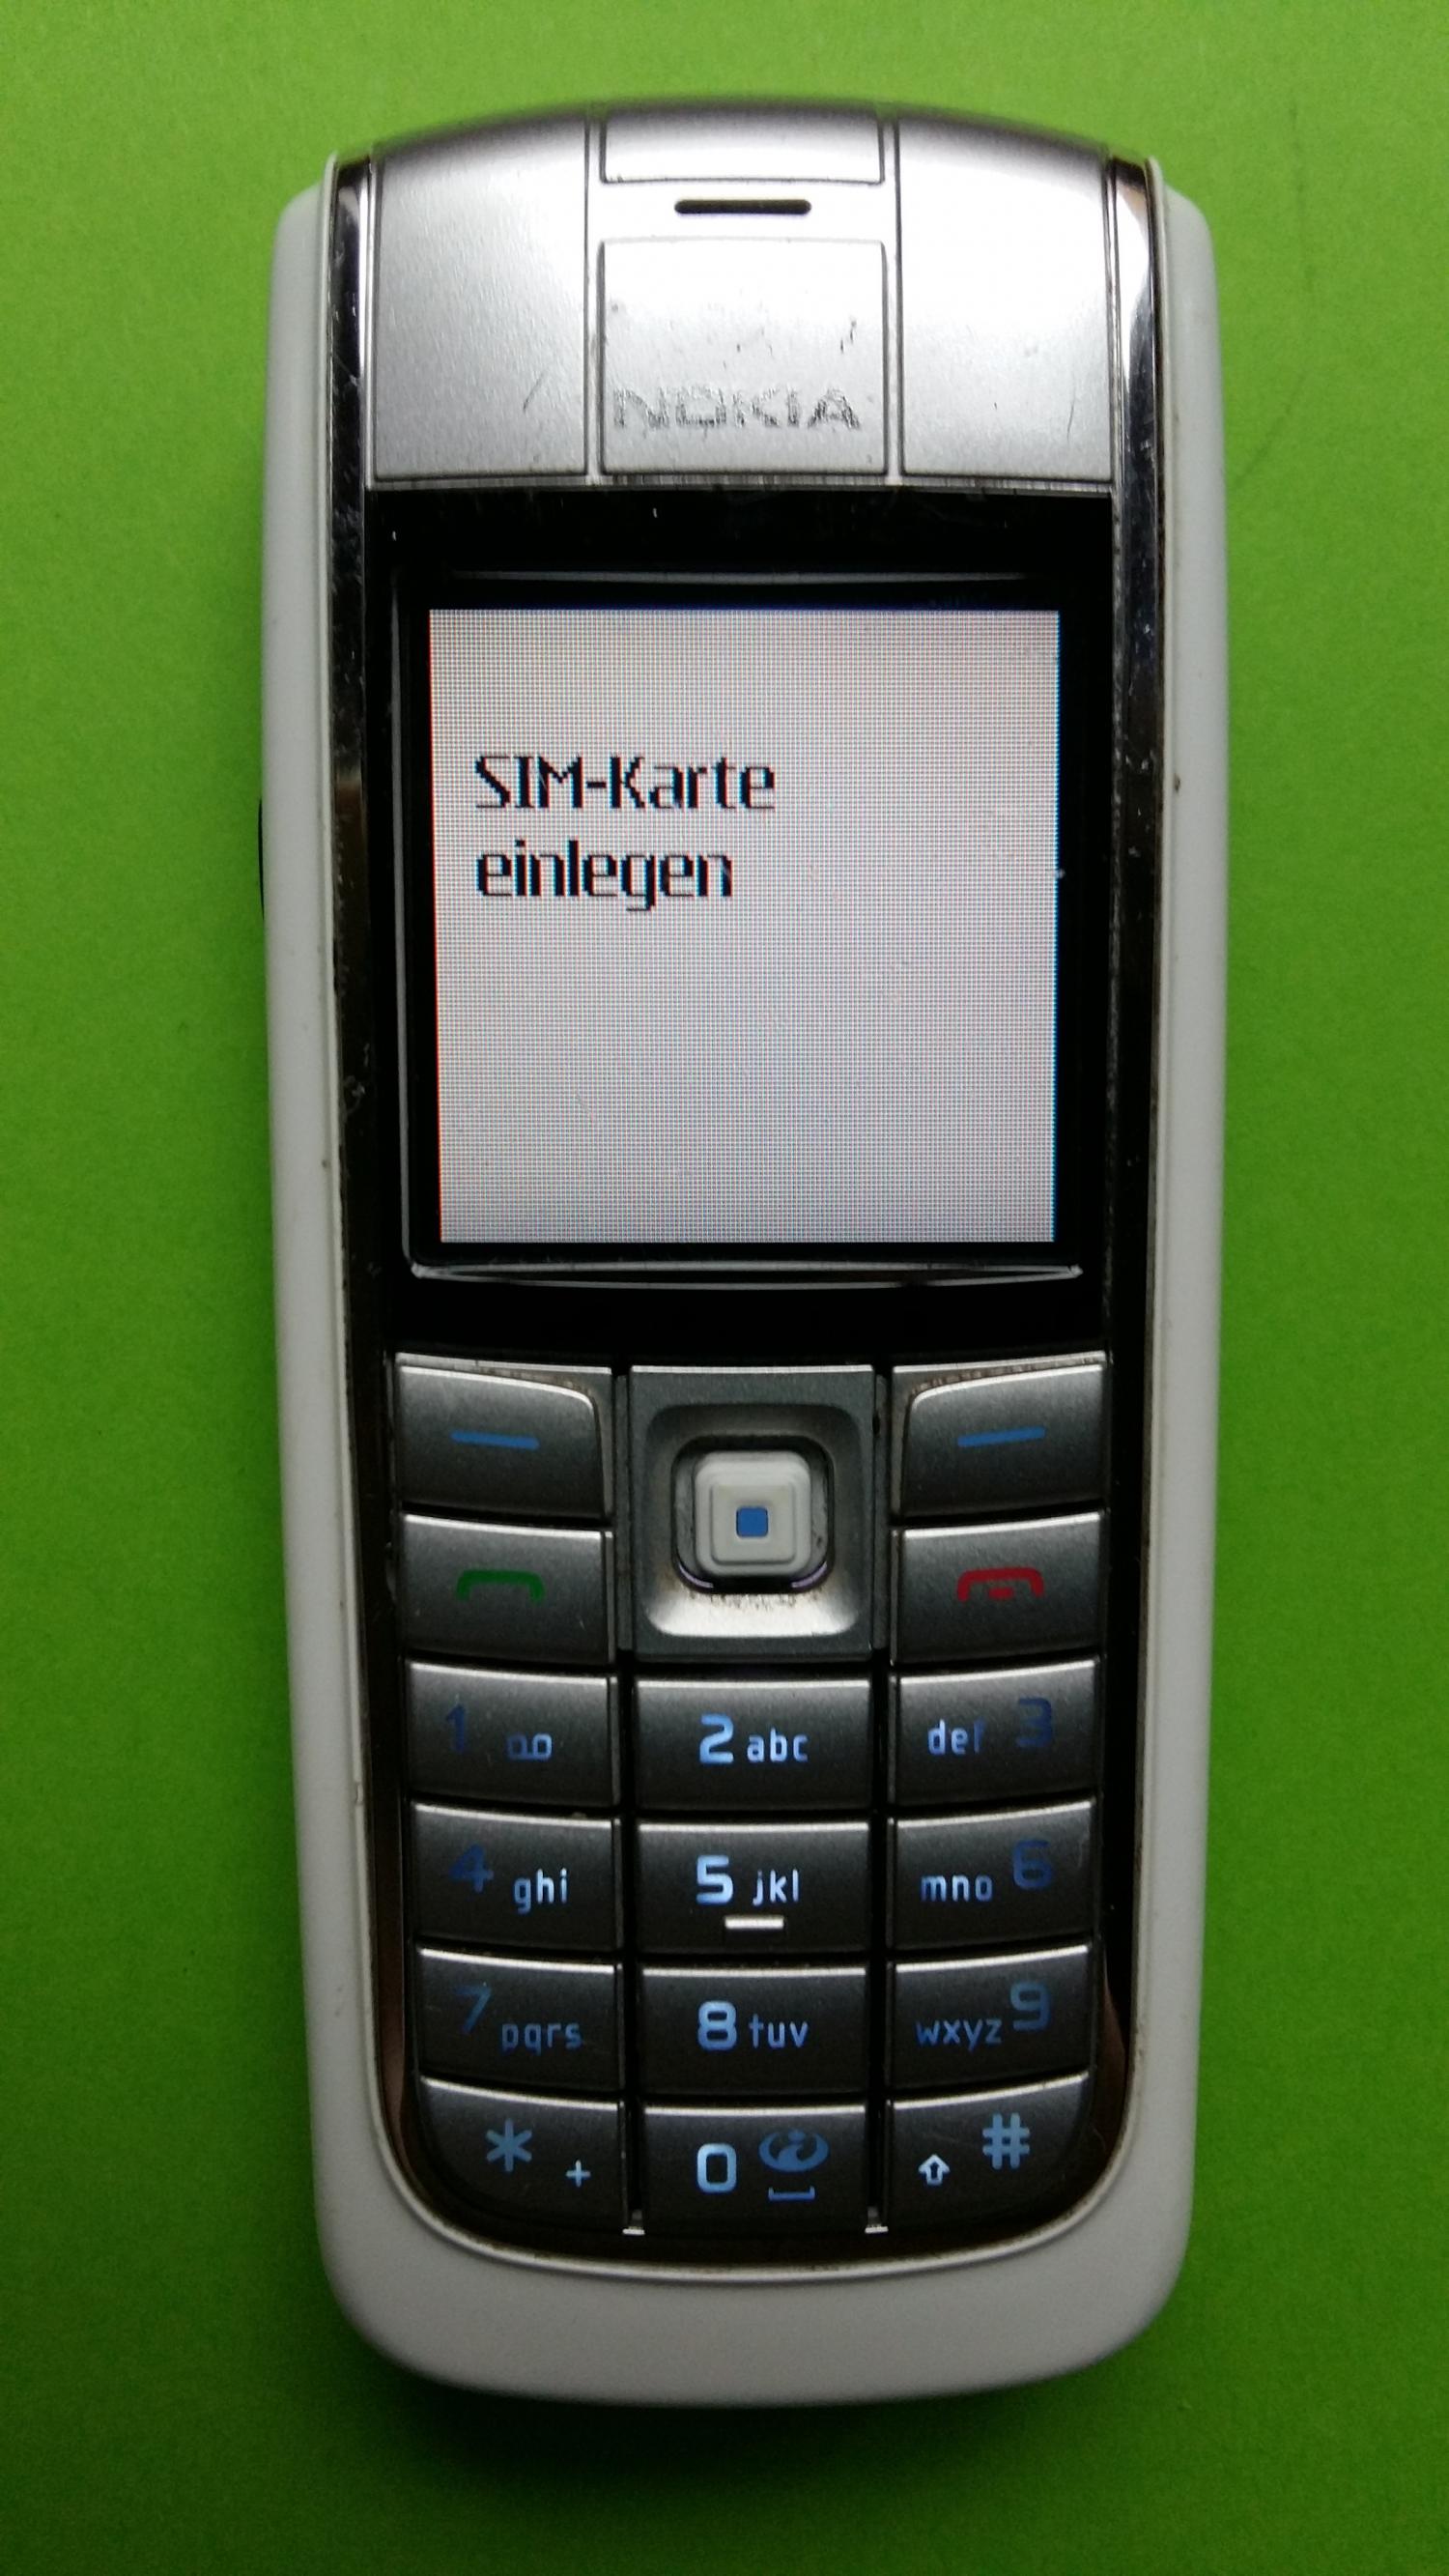 image-7307034-Nokia 6020 (2)1.jpg